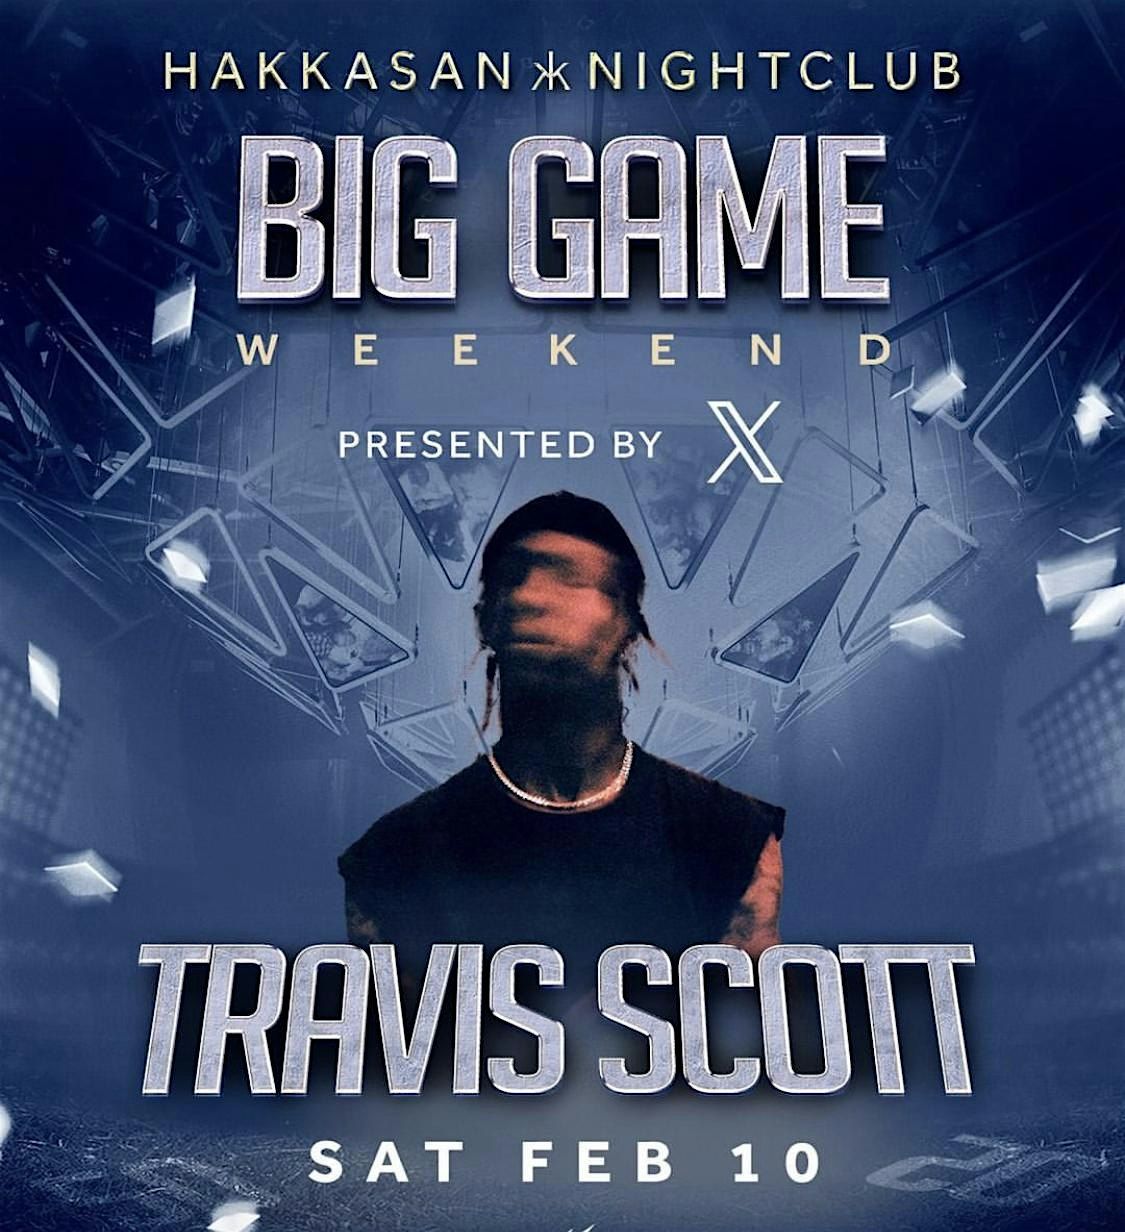 Big Game Weekend Party  | Hakkasan Nightclub Las Vegas Hosted By Travis!l!!